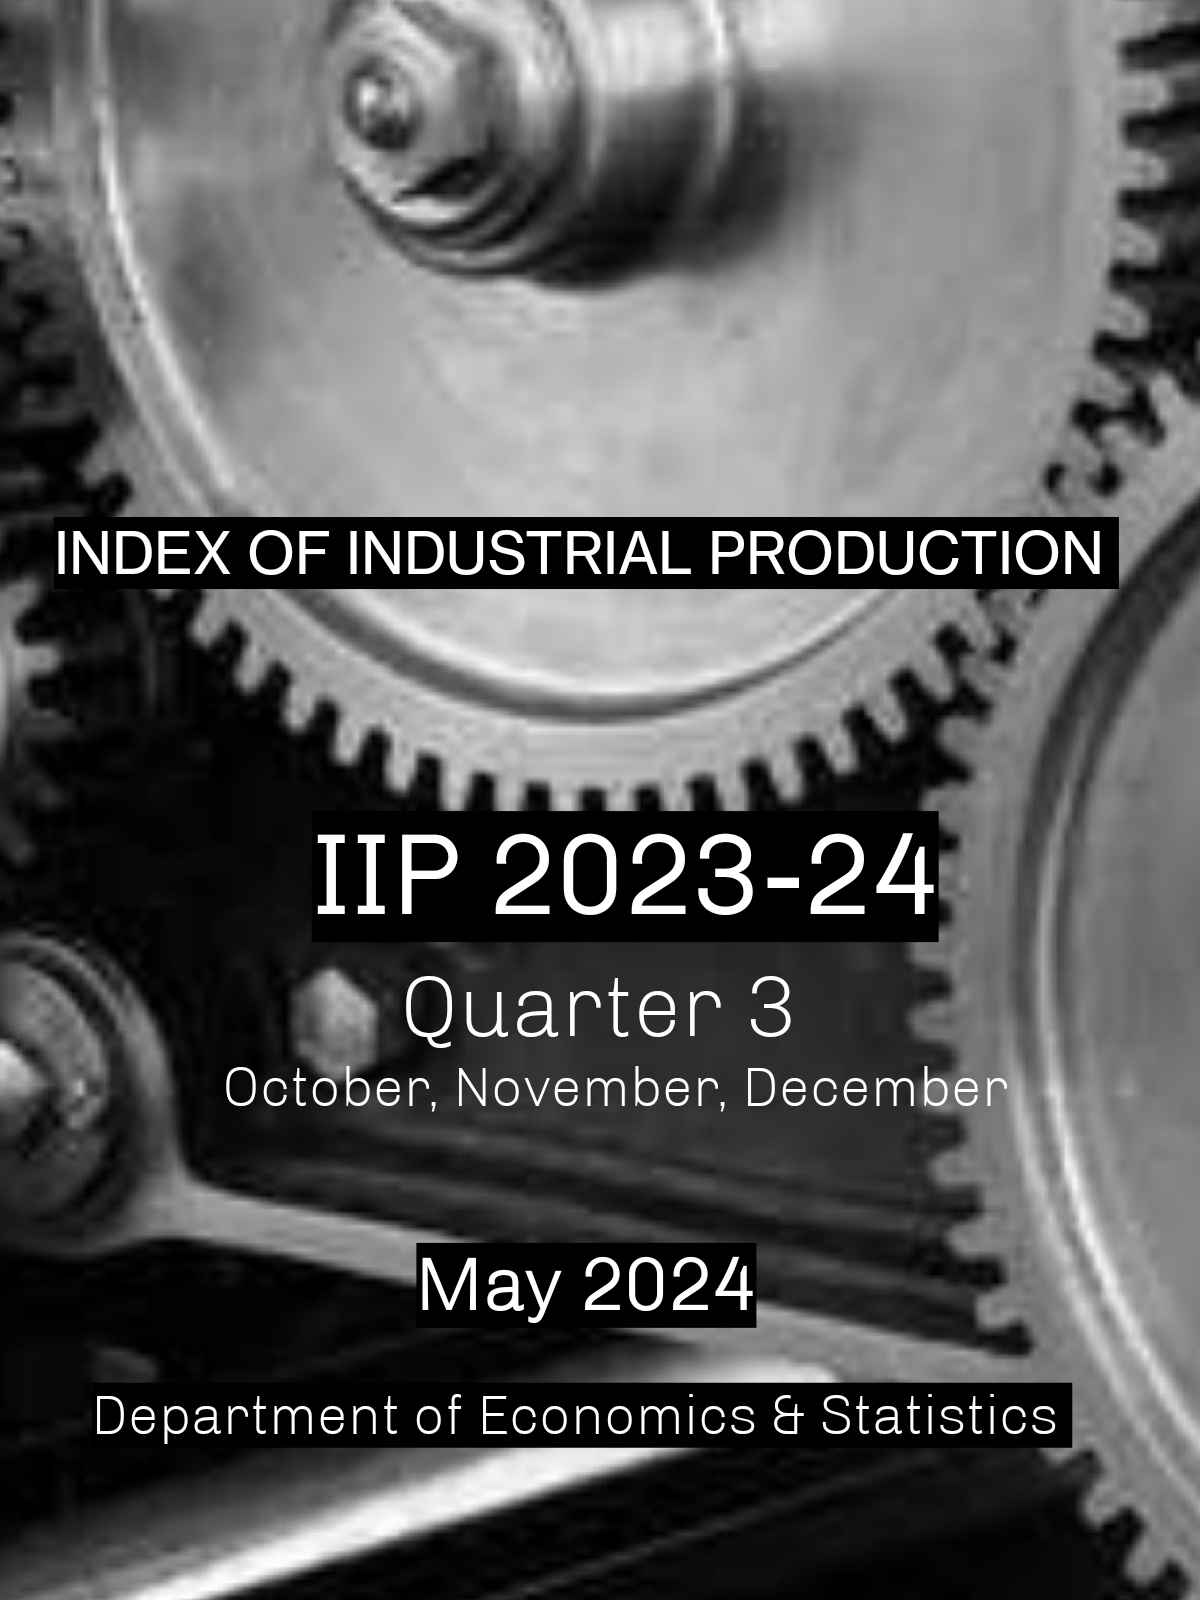 IIP report Quarter 3 2023-24